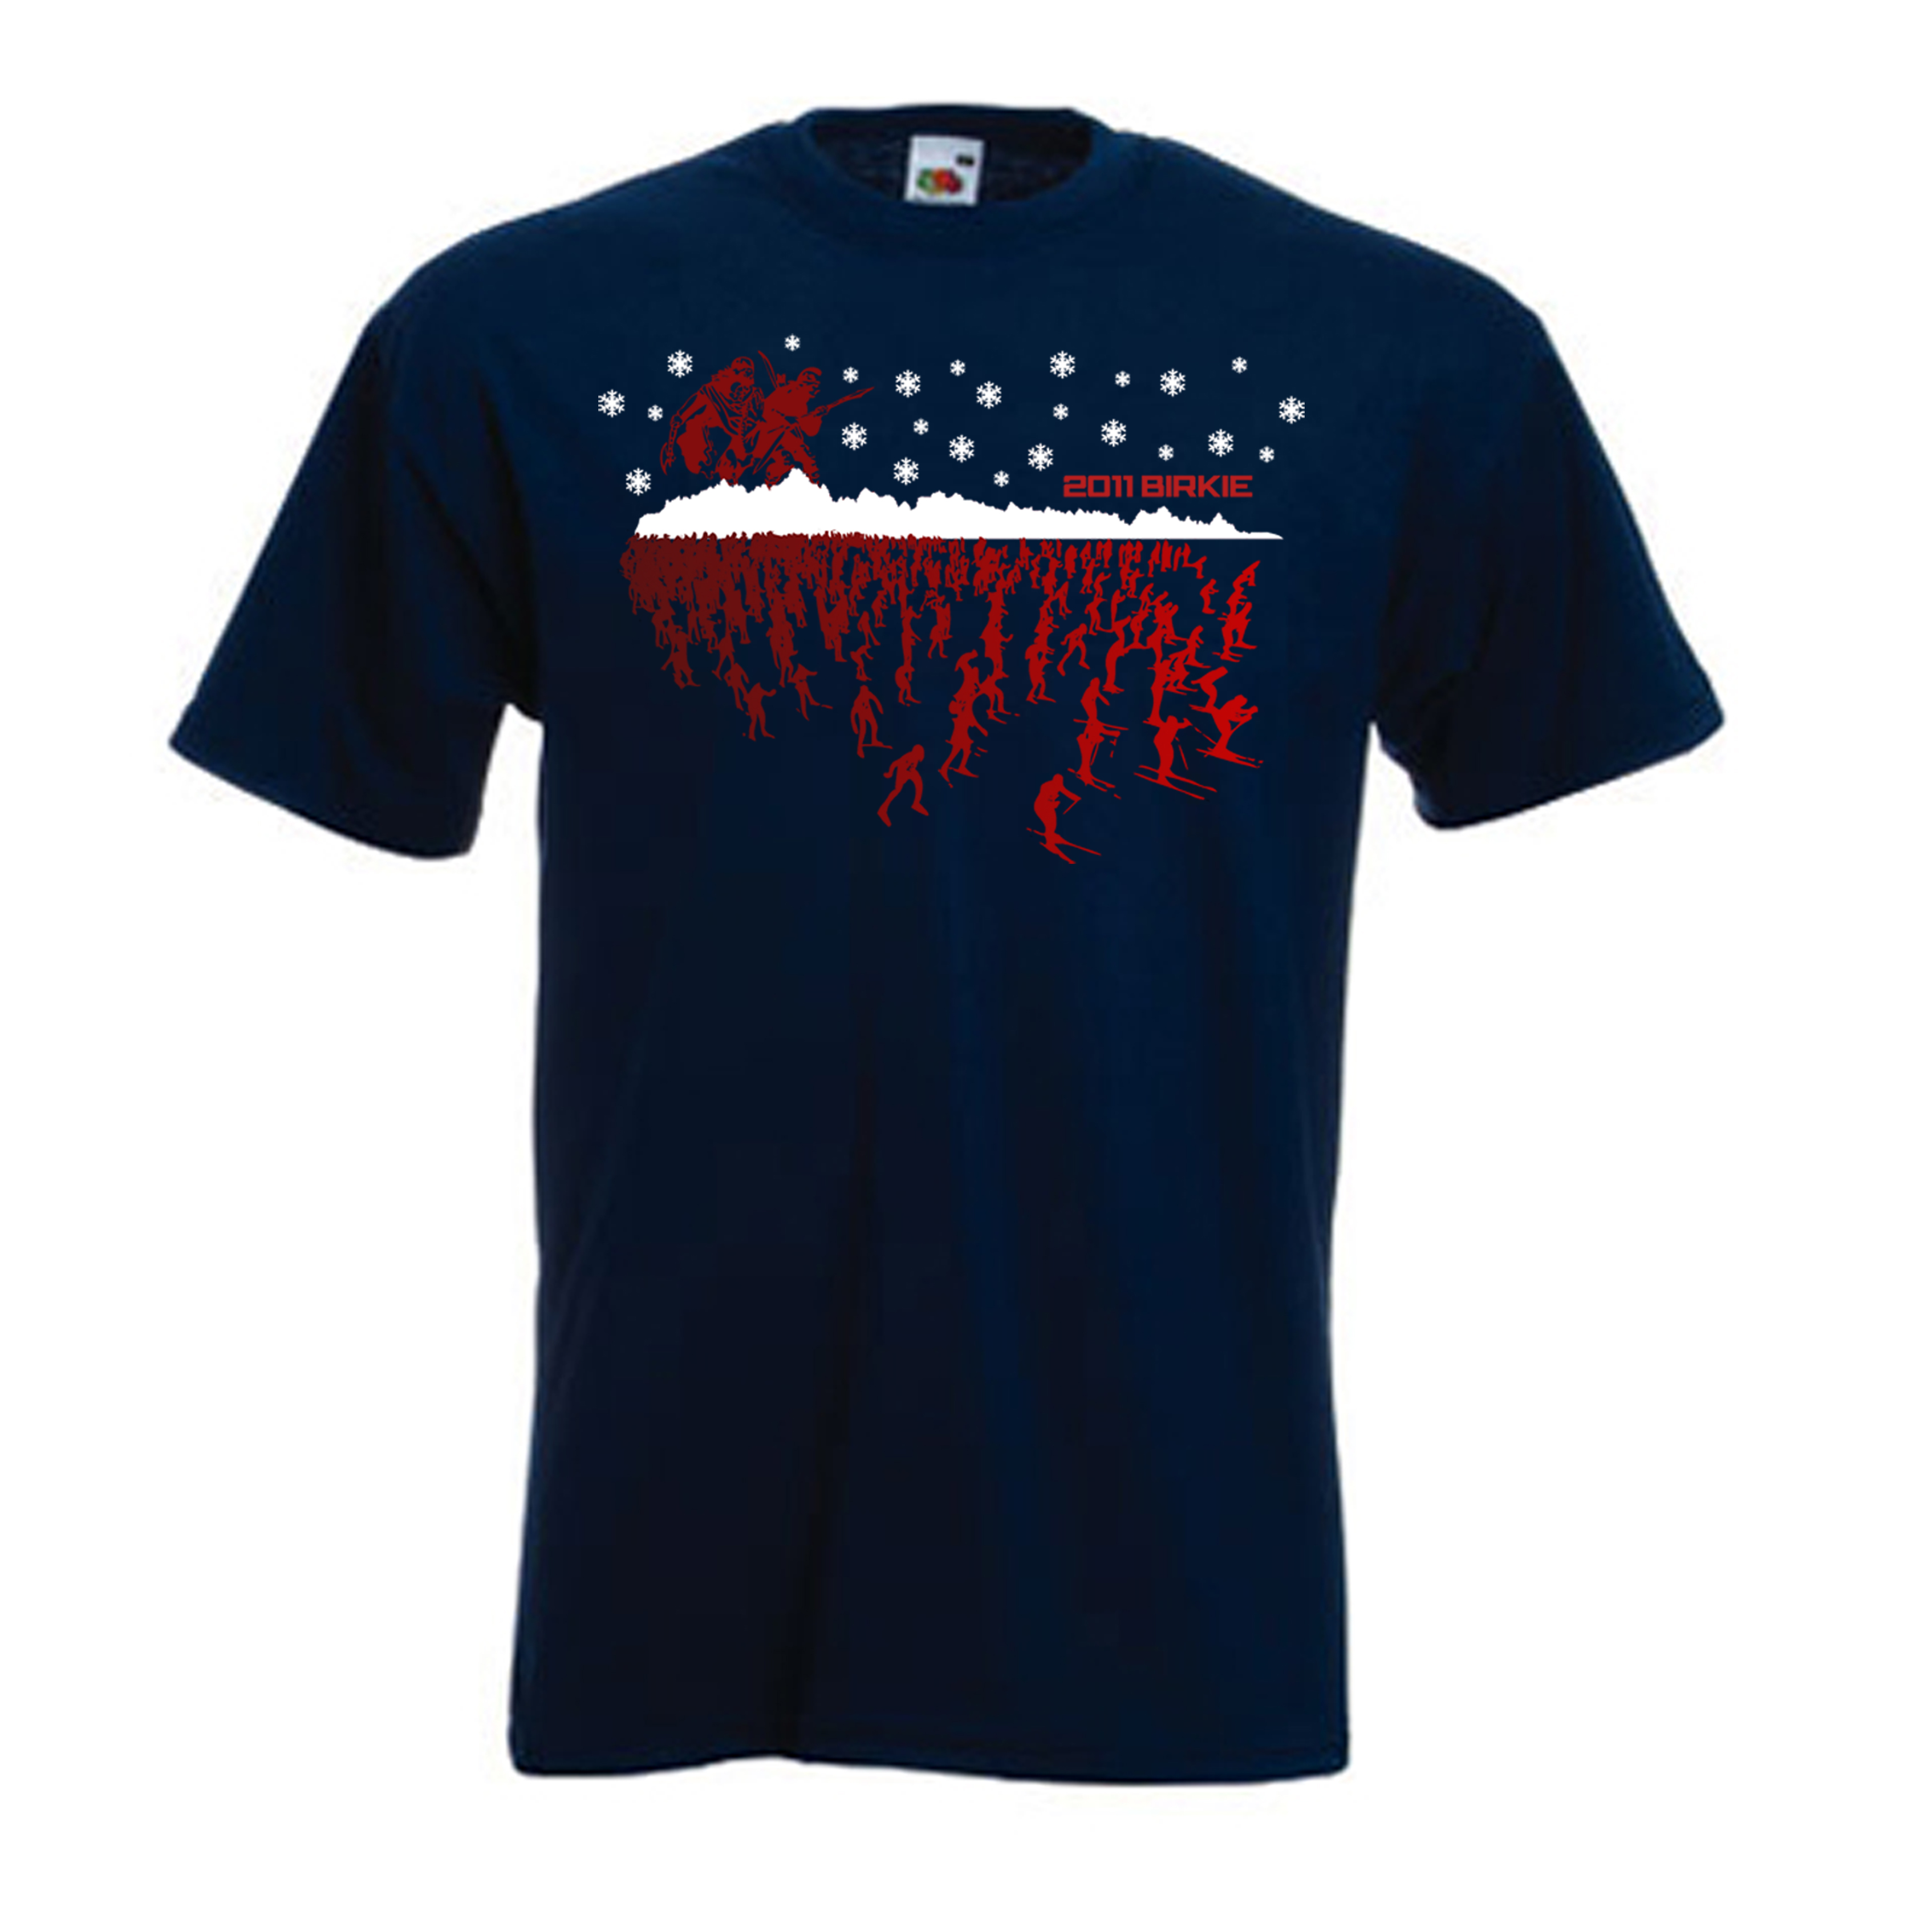 American Birkebeiner® Announces T-Shirt Design Contest Winner